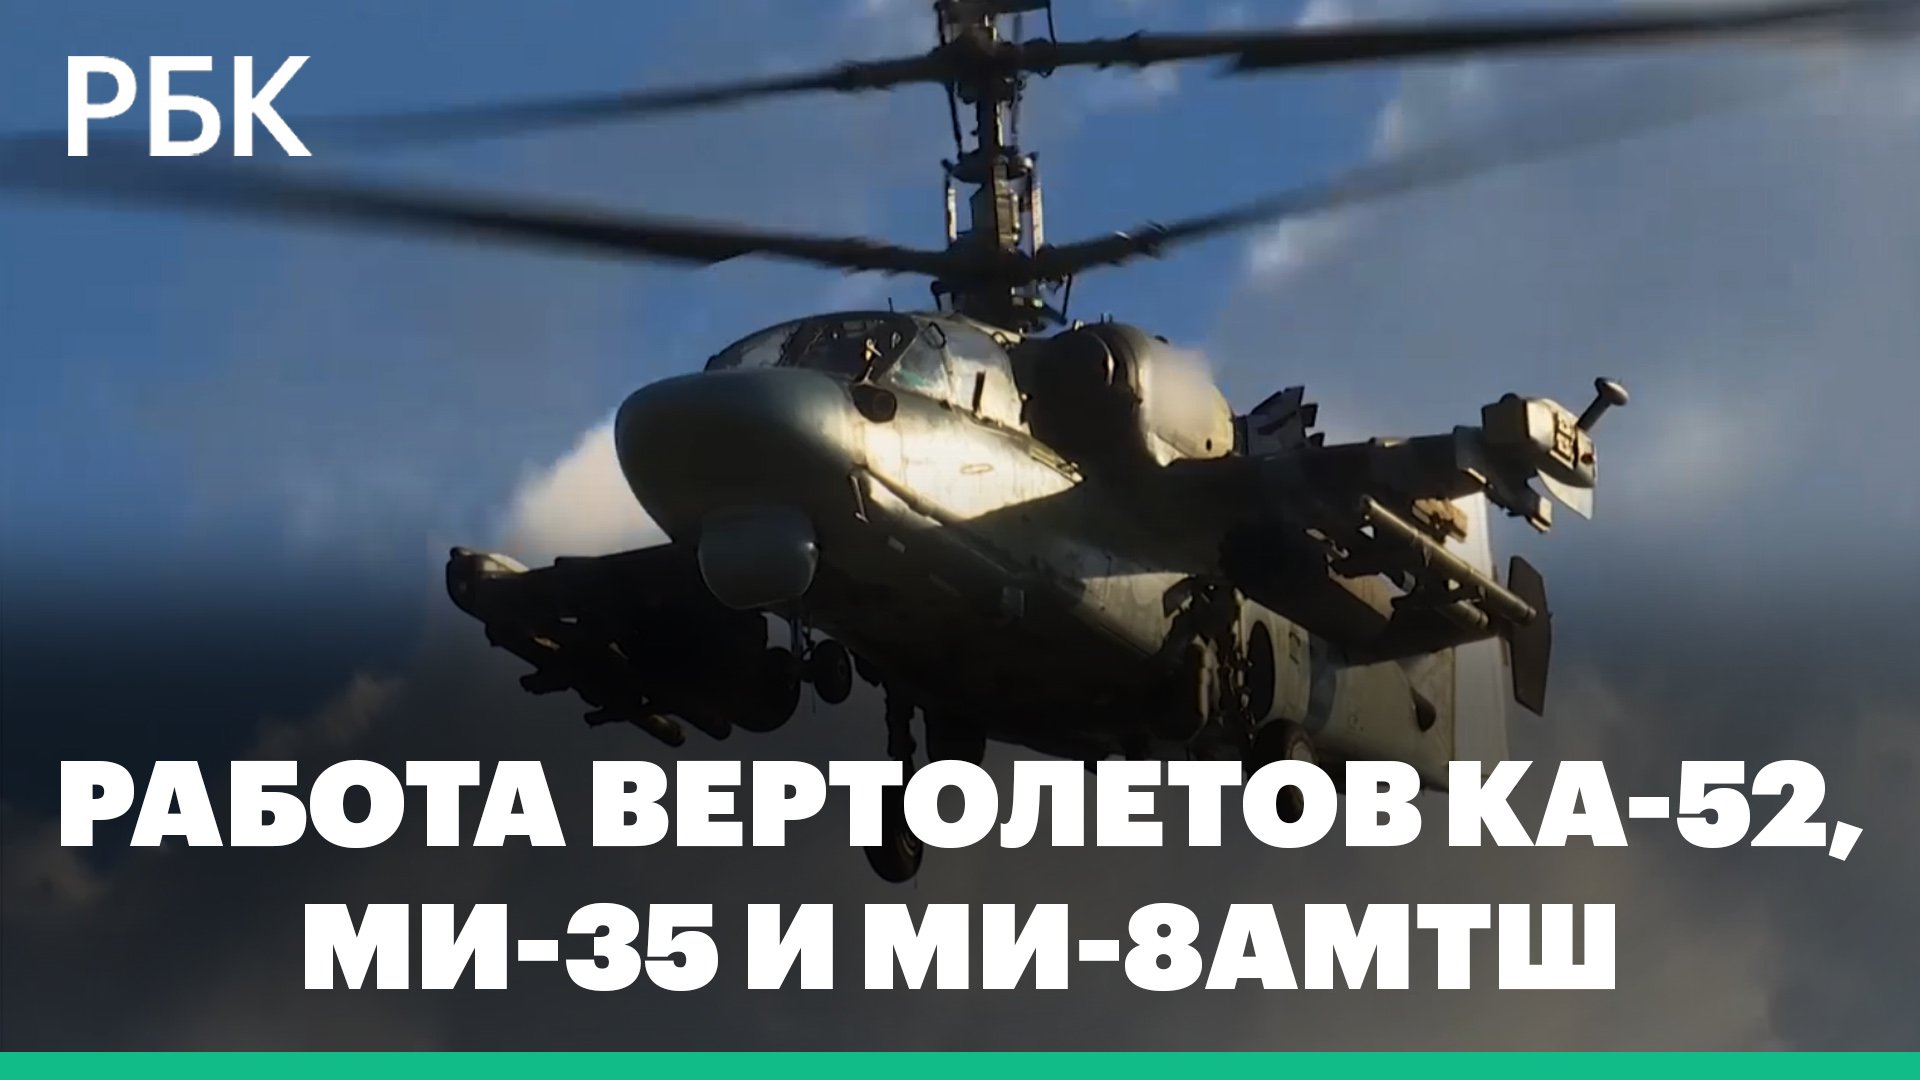 Минобороны: кадры боевой работы экипажей вертолетов Ка-52, Ми-35 и Ми-8АМТШ армейской авиации ЗВО